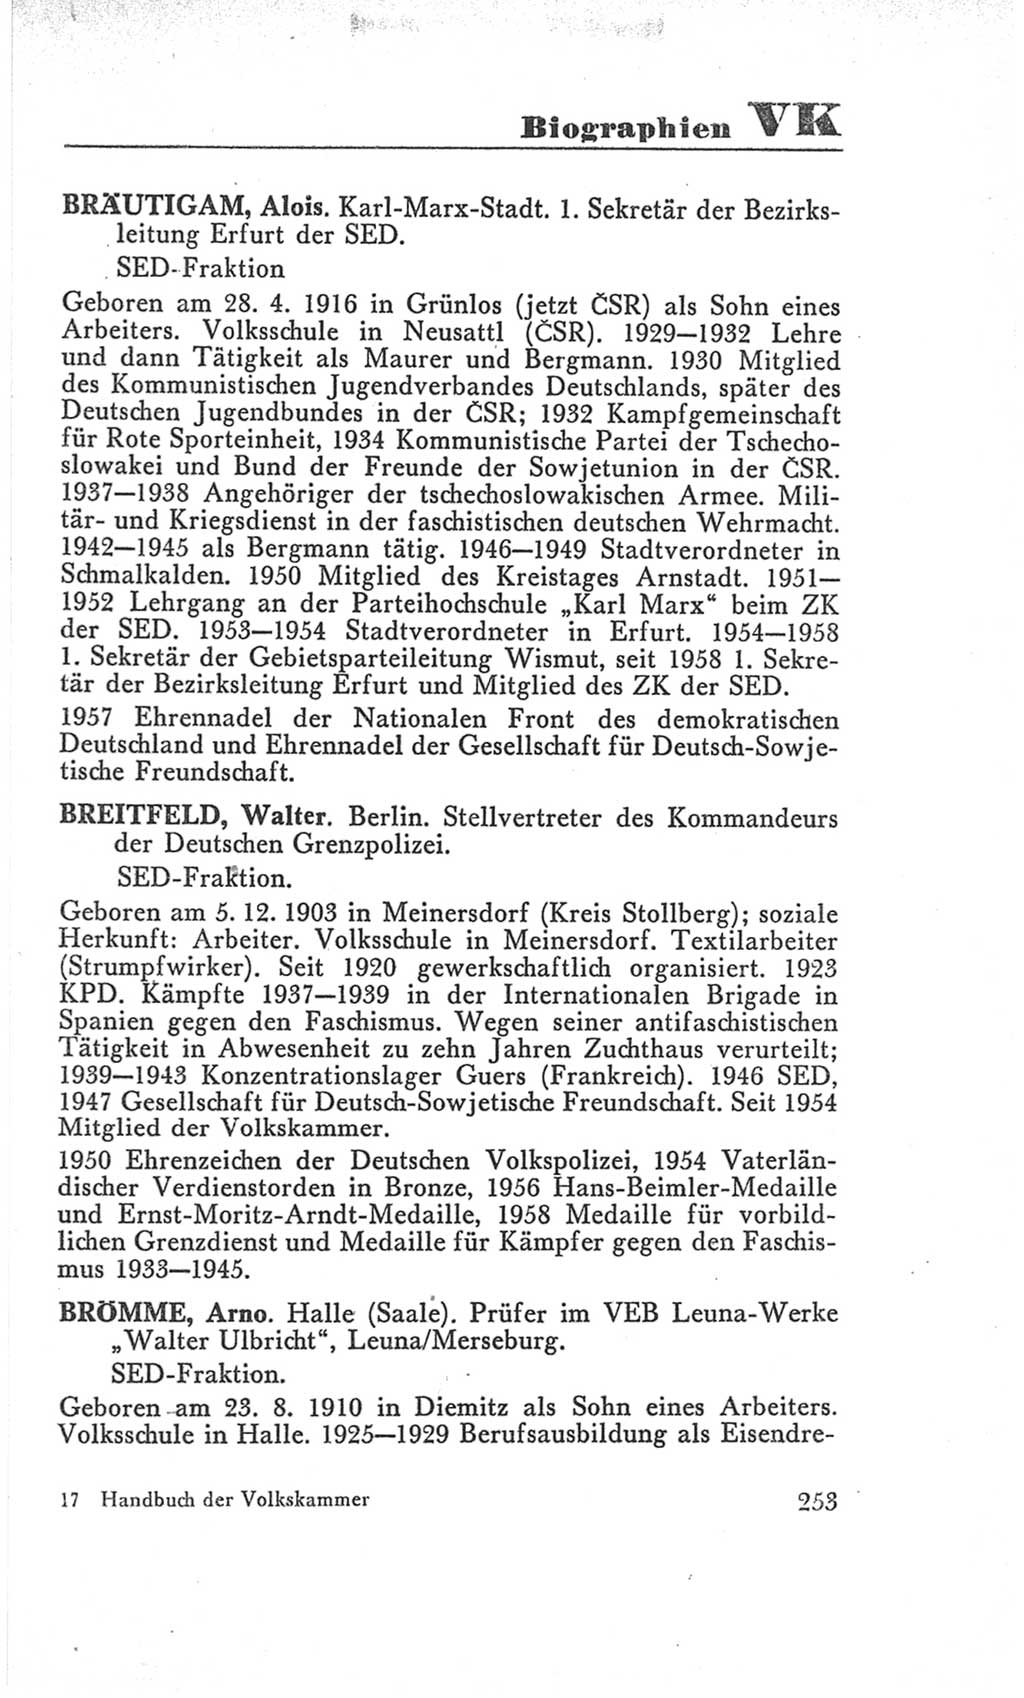 Handbuch der Volkskammer (VK) der Deutschen Demokratischen Republik (DDR), 3. Wahlperiode 1958-1963, Seite 253 (Hdb. VK. DDR 3. WP. 1958-1963, S. 253)